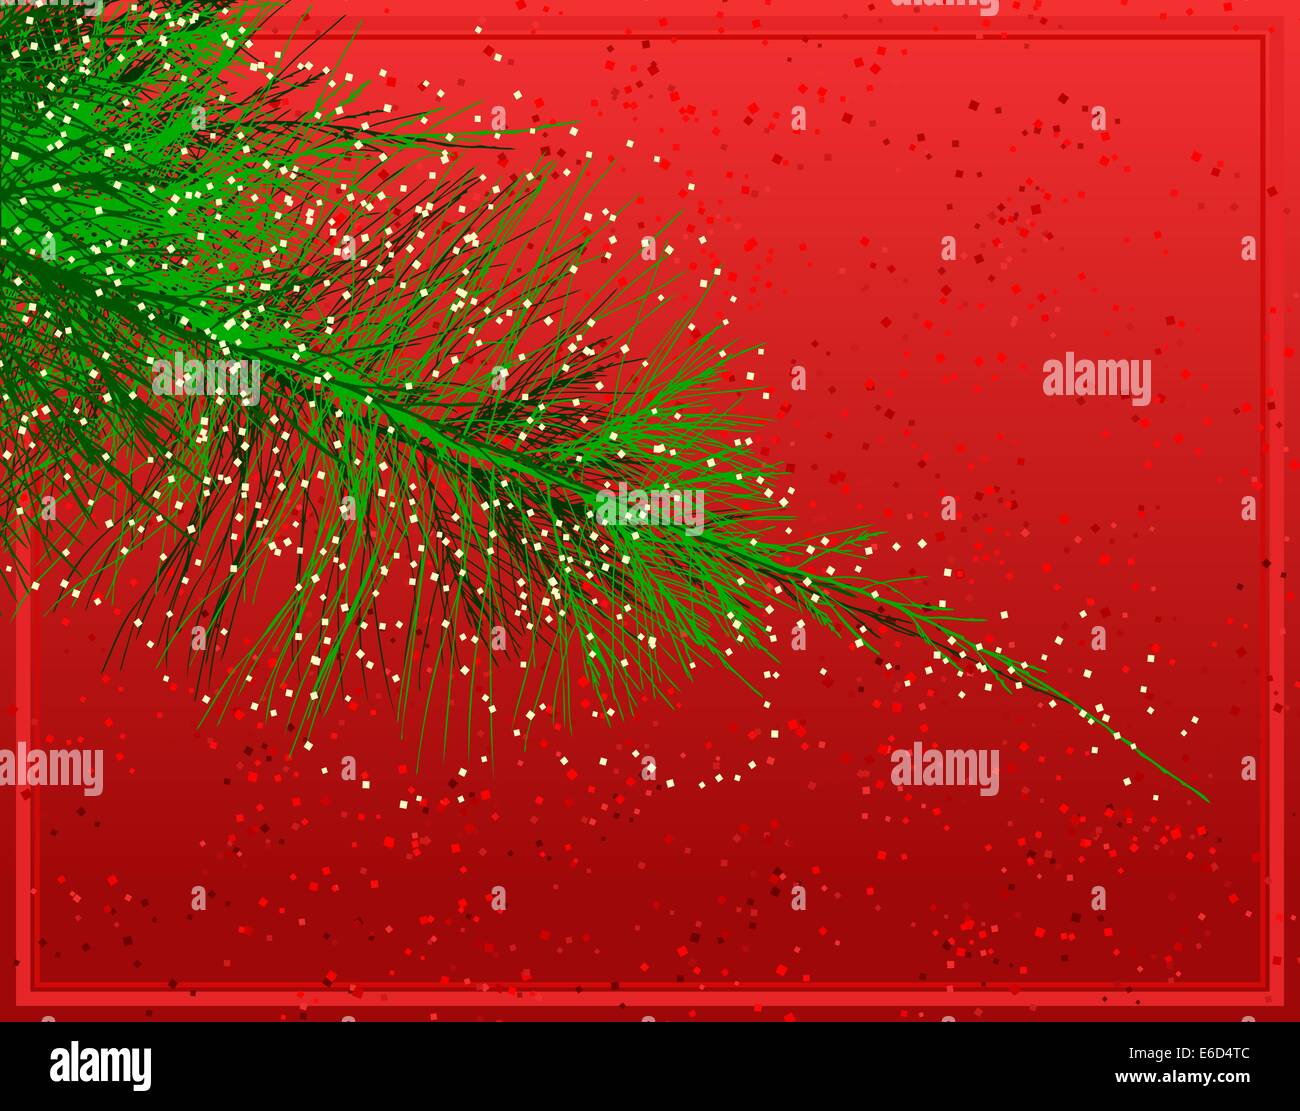 Bearbeitbares Vektor-Illustration von einem glitzernden Weihnachtsbaum Zweig Stock Vektor